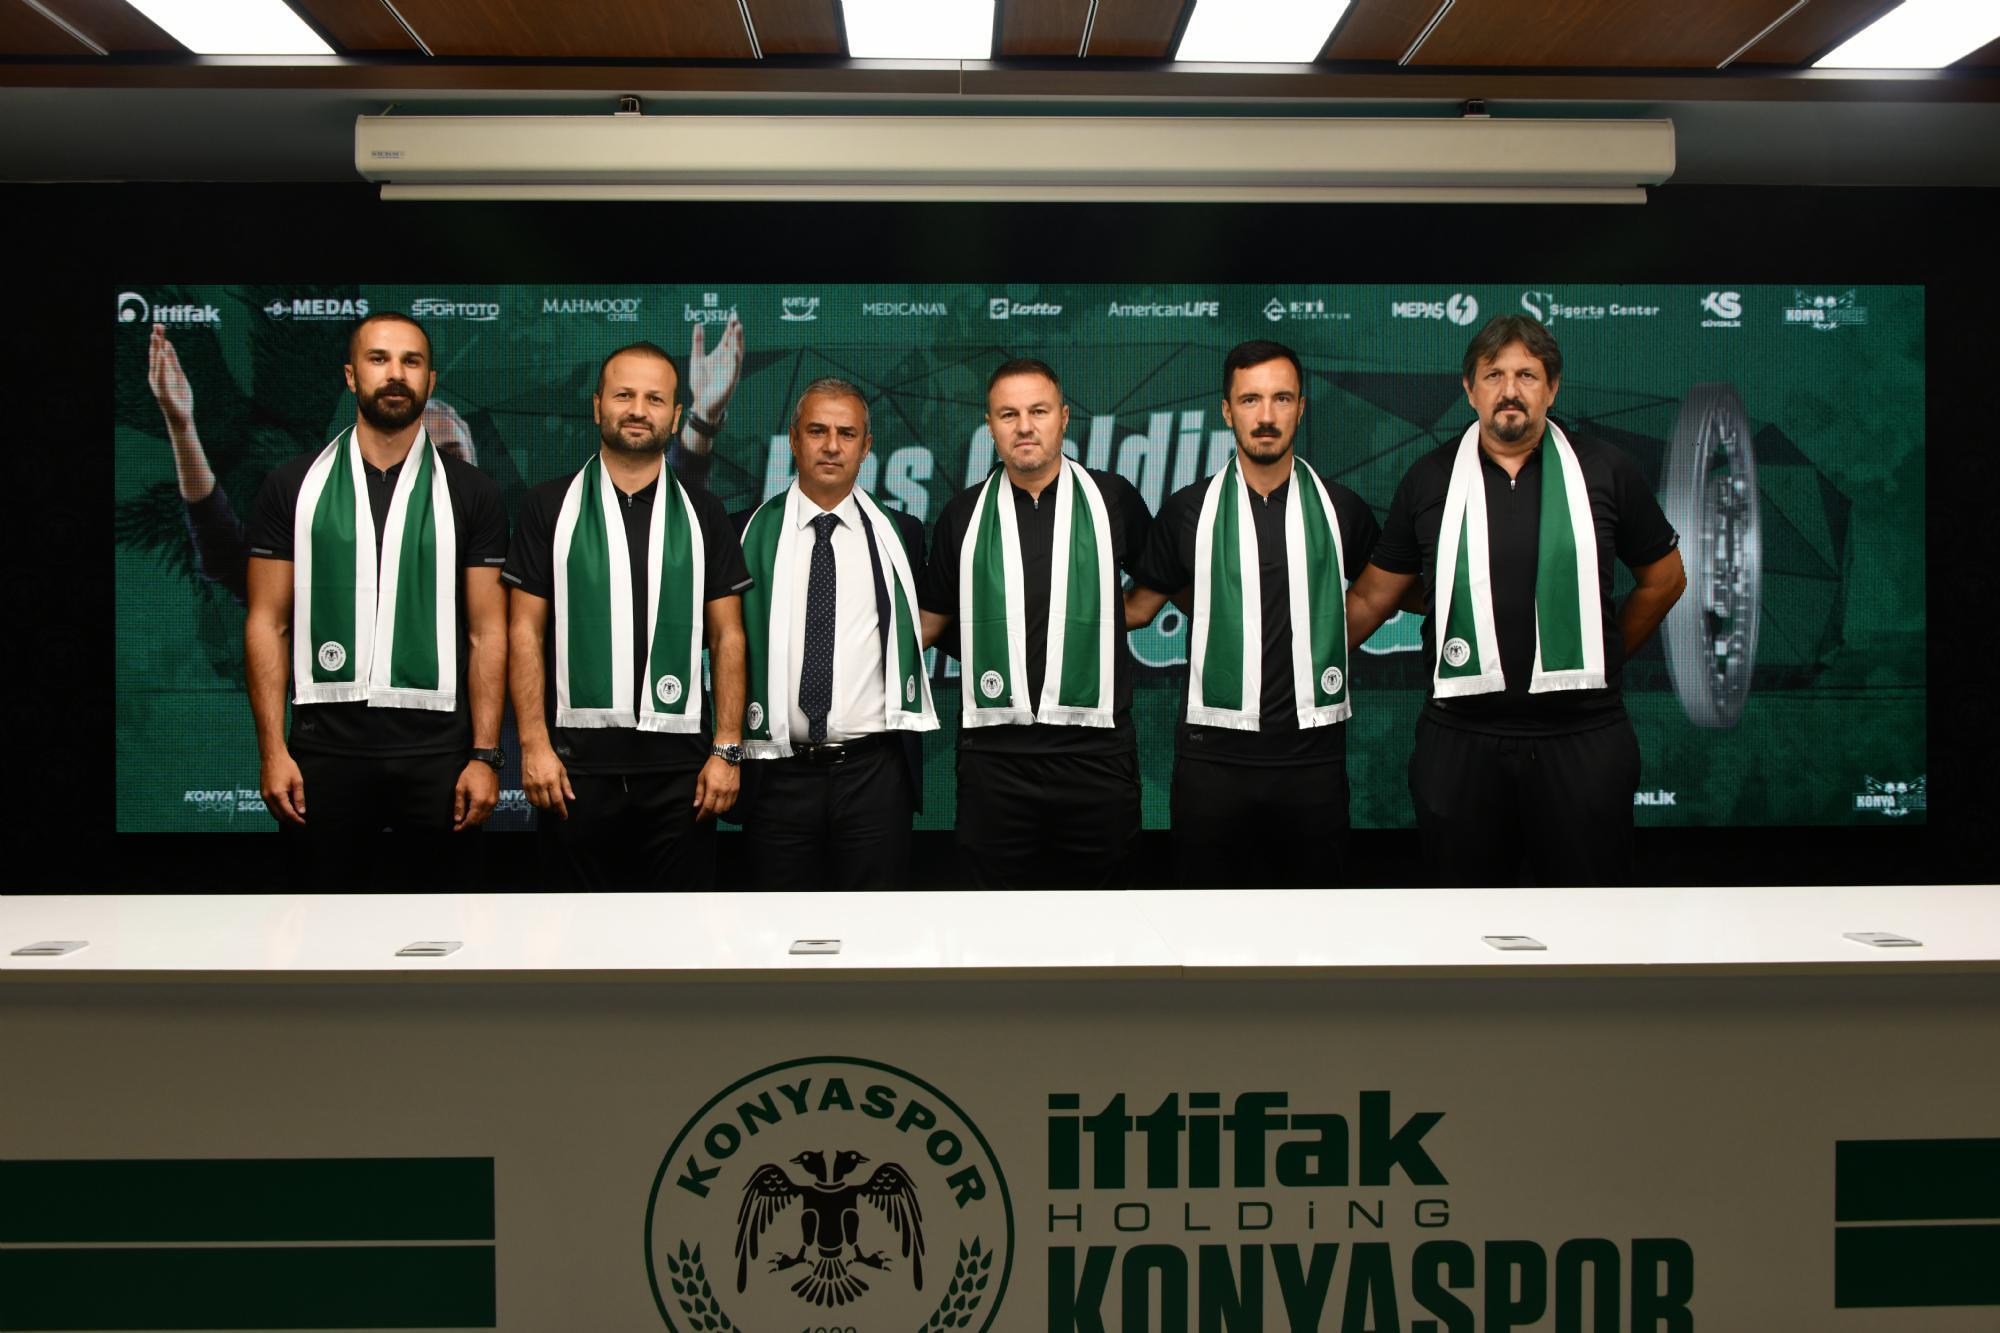 SON DAKİKA Konyaspor, İsmail Kartal ile 2 yıllık sözleşme imzaladı